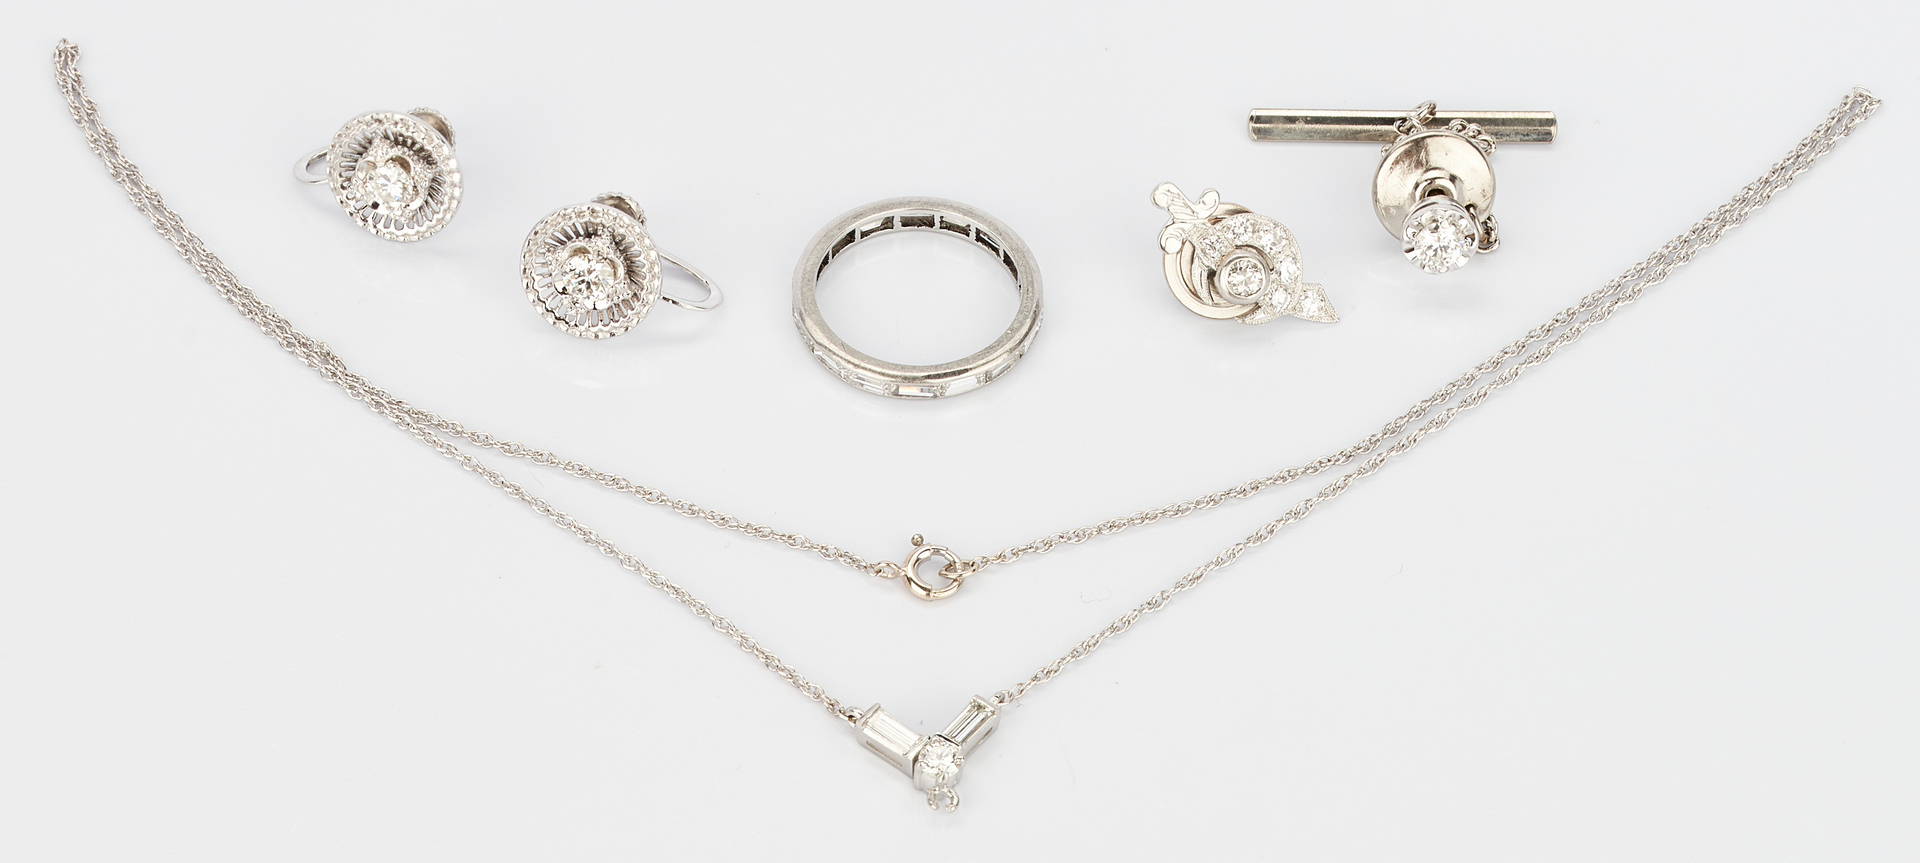 Lot 770: 4 Diamond and 14K & 2 Diamond & Platinum Jewelry Items, 6 total